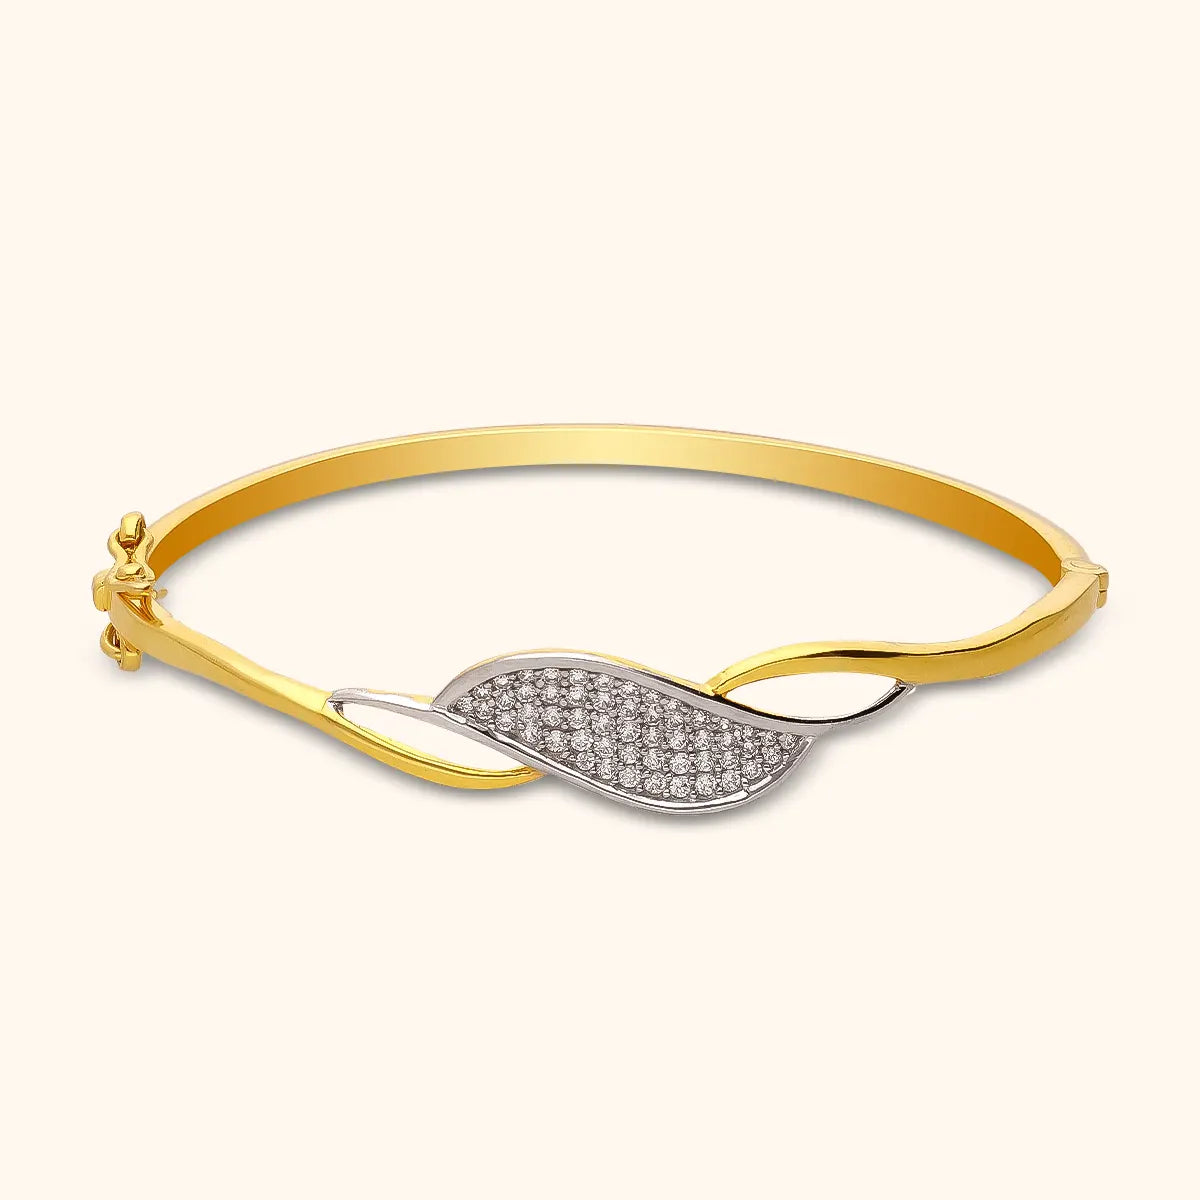 Tiffany HardWear 18K Gold Link Bracelet | Tiffany & Co.